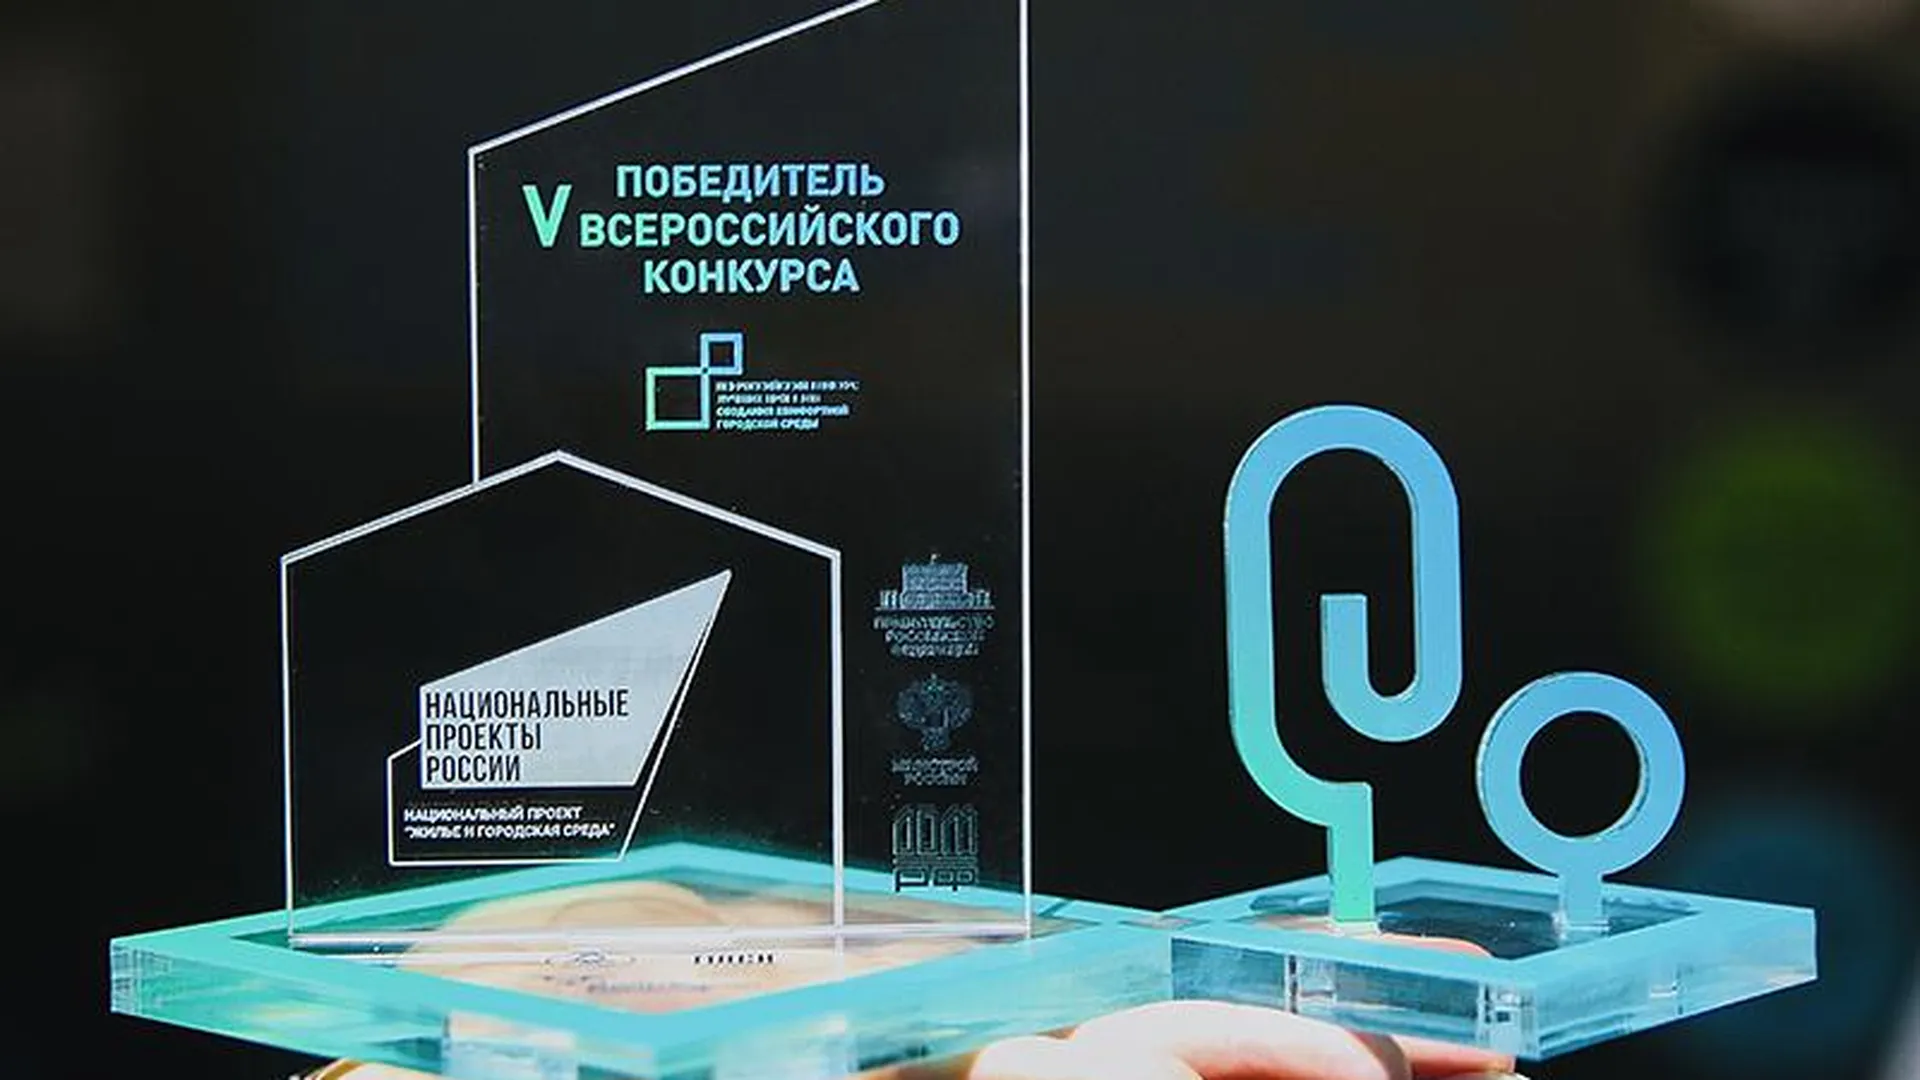 Шесть подмосковных локаций ждёт преображение после победы на всероссийском конкурсе благоустройства